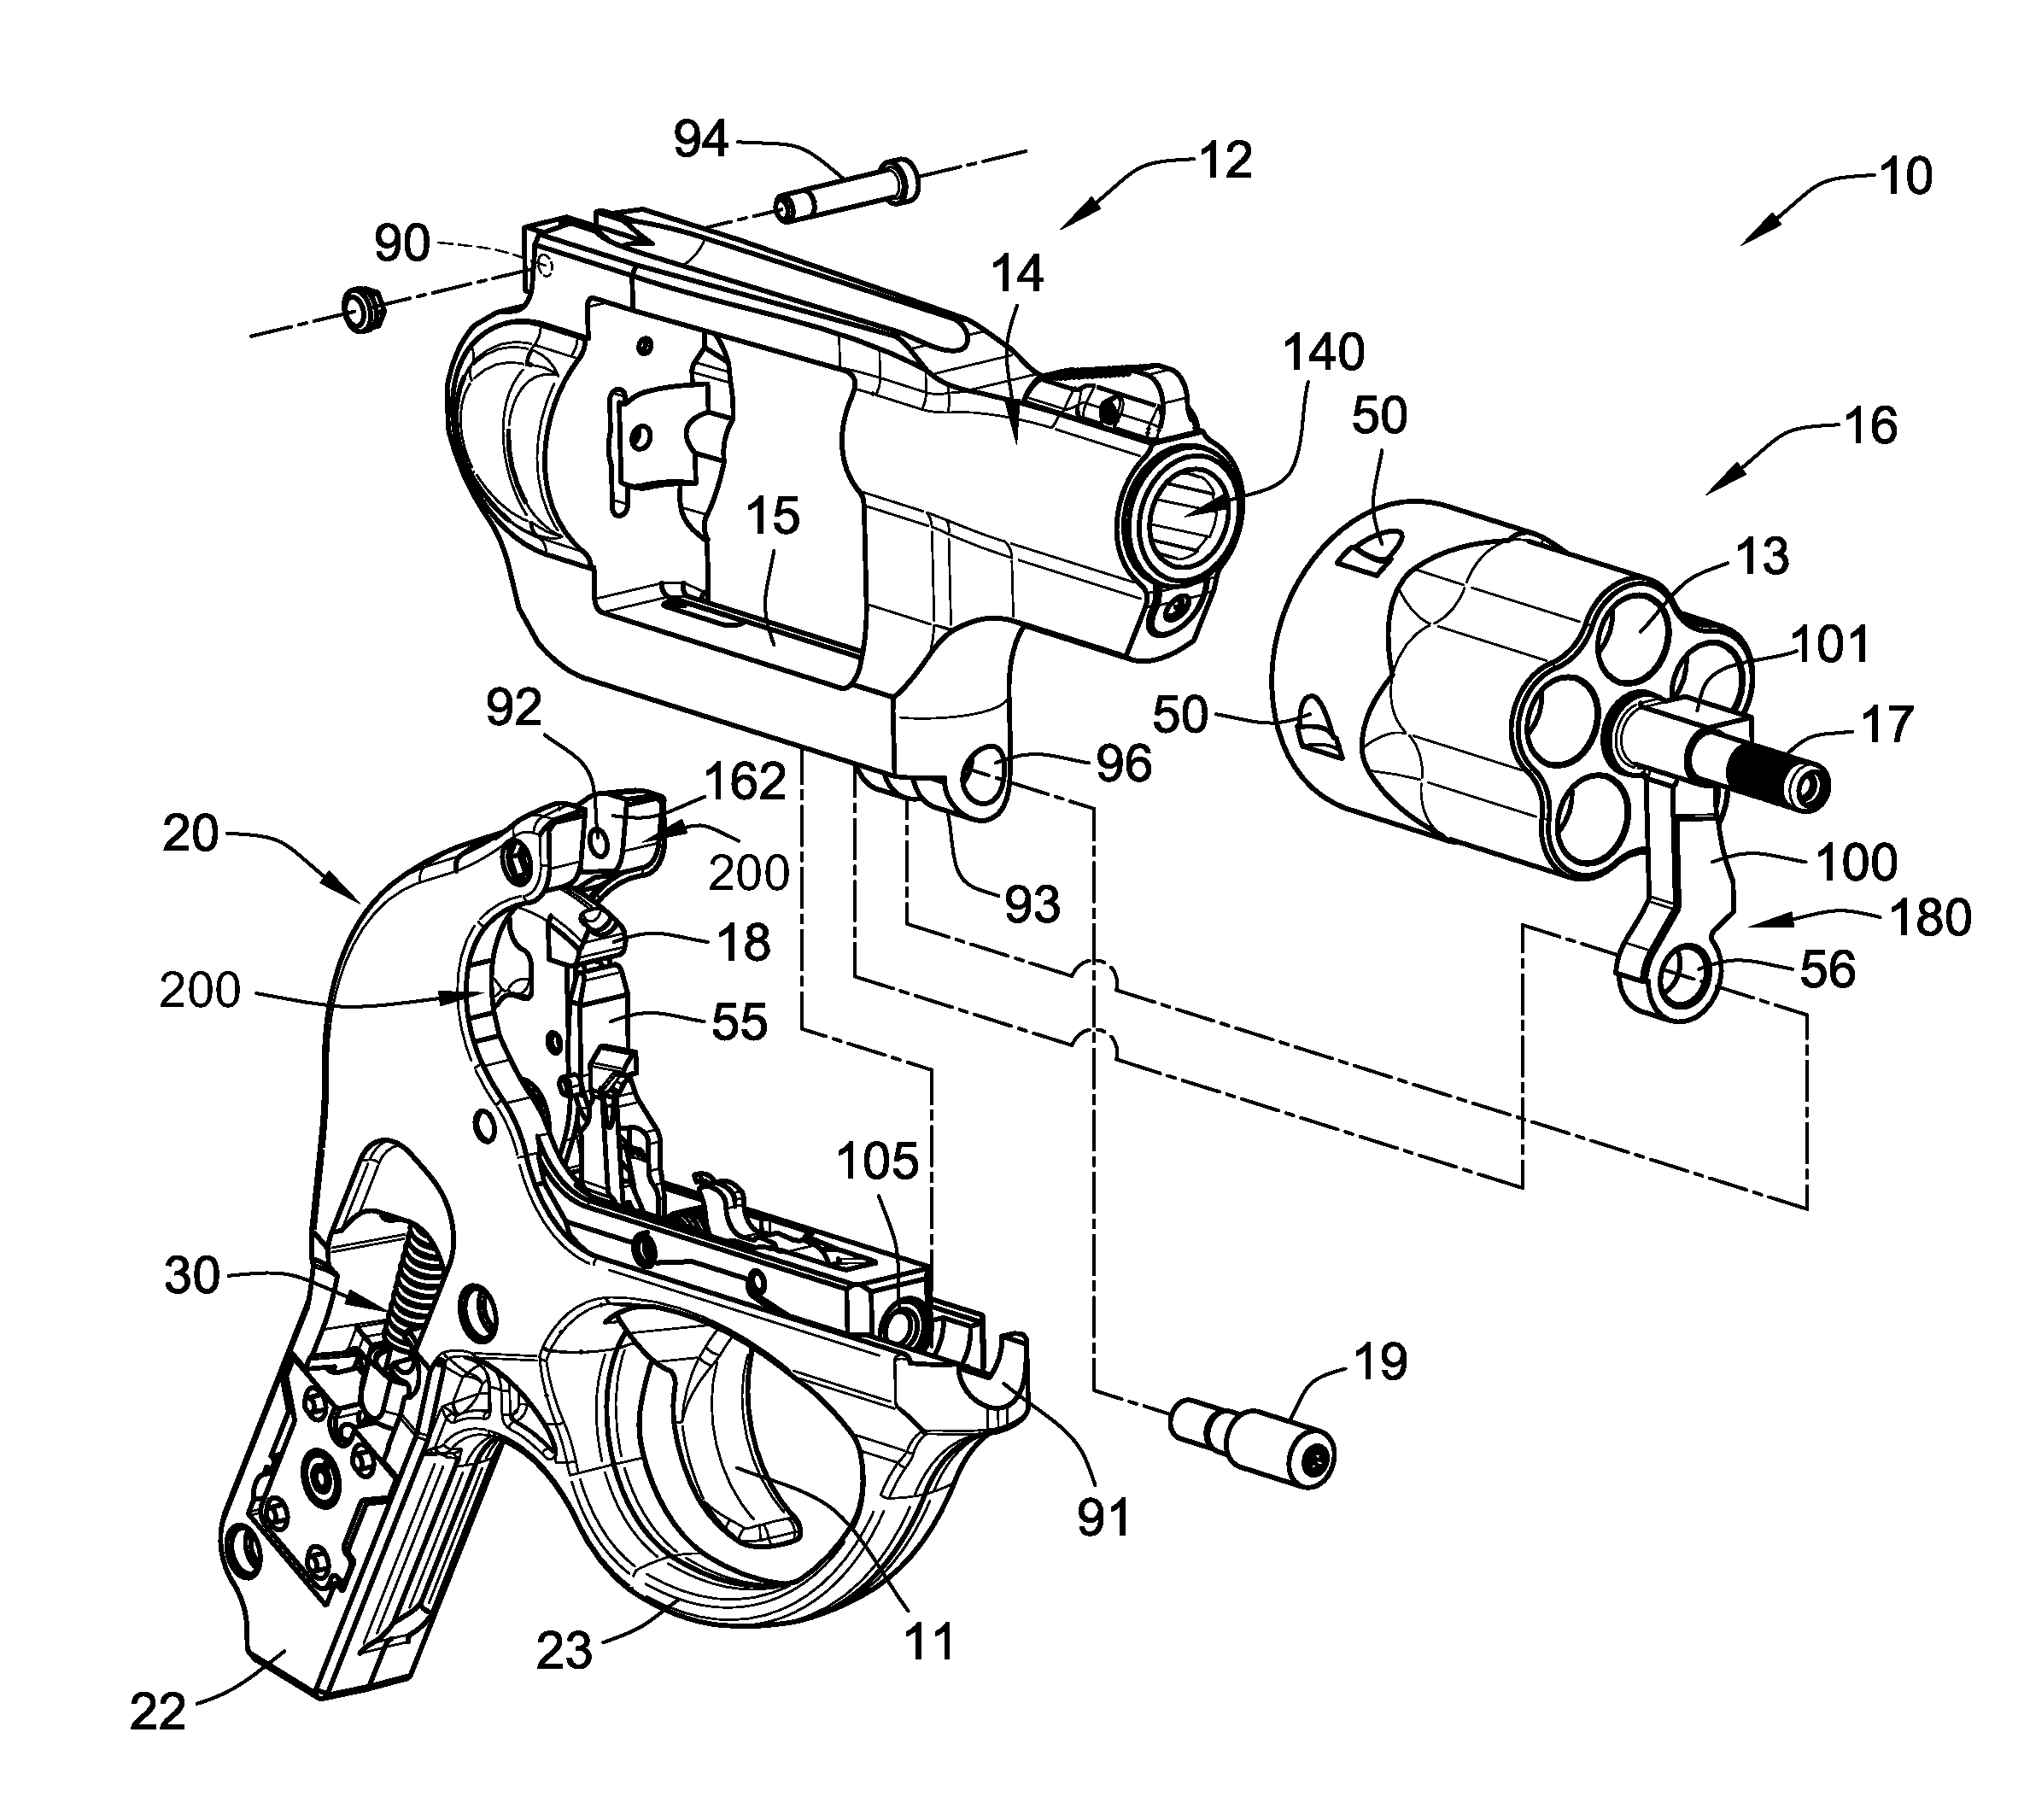 Light weight firing control housing for revolver